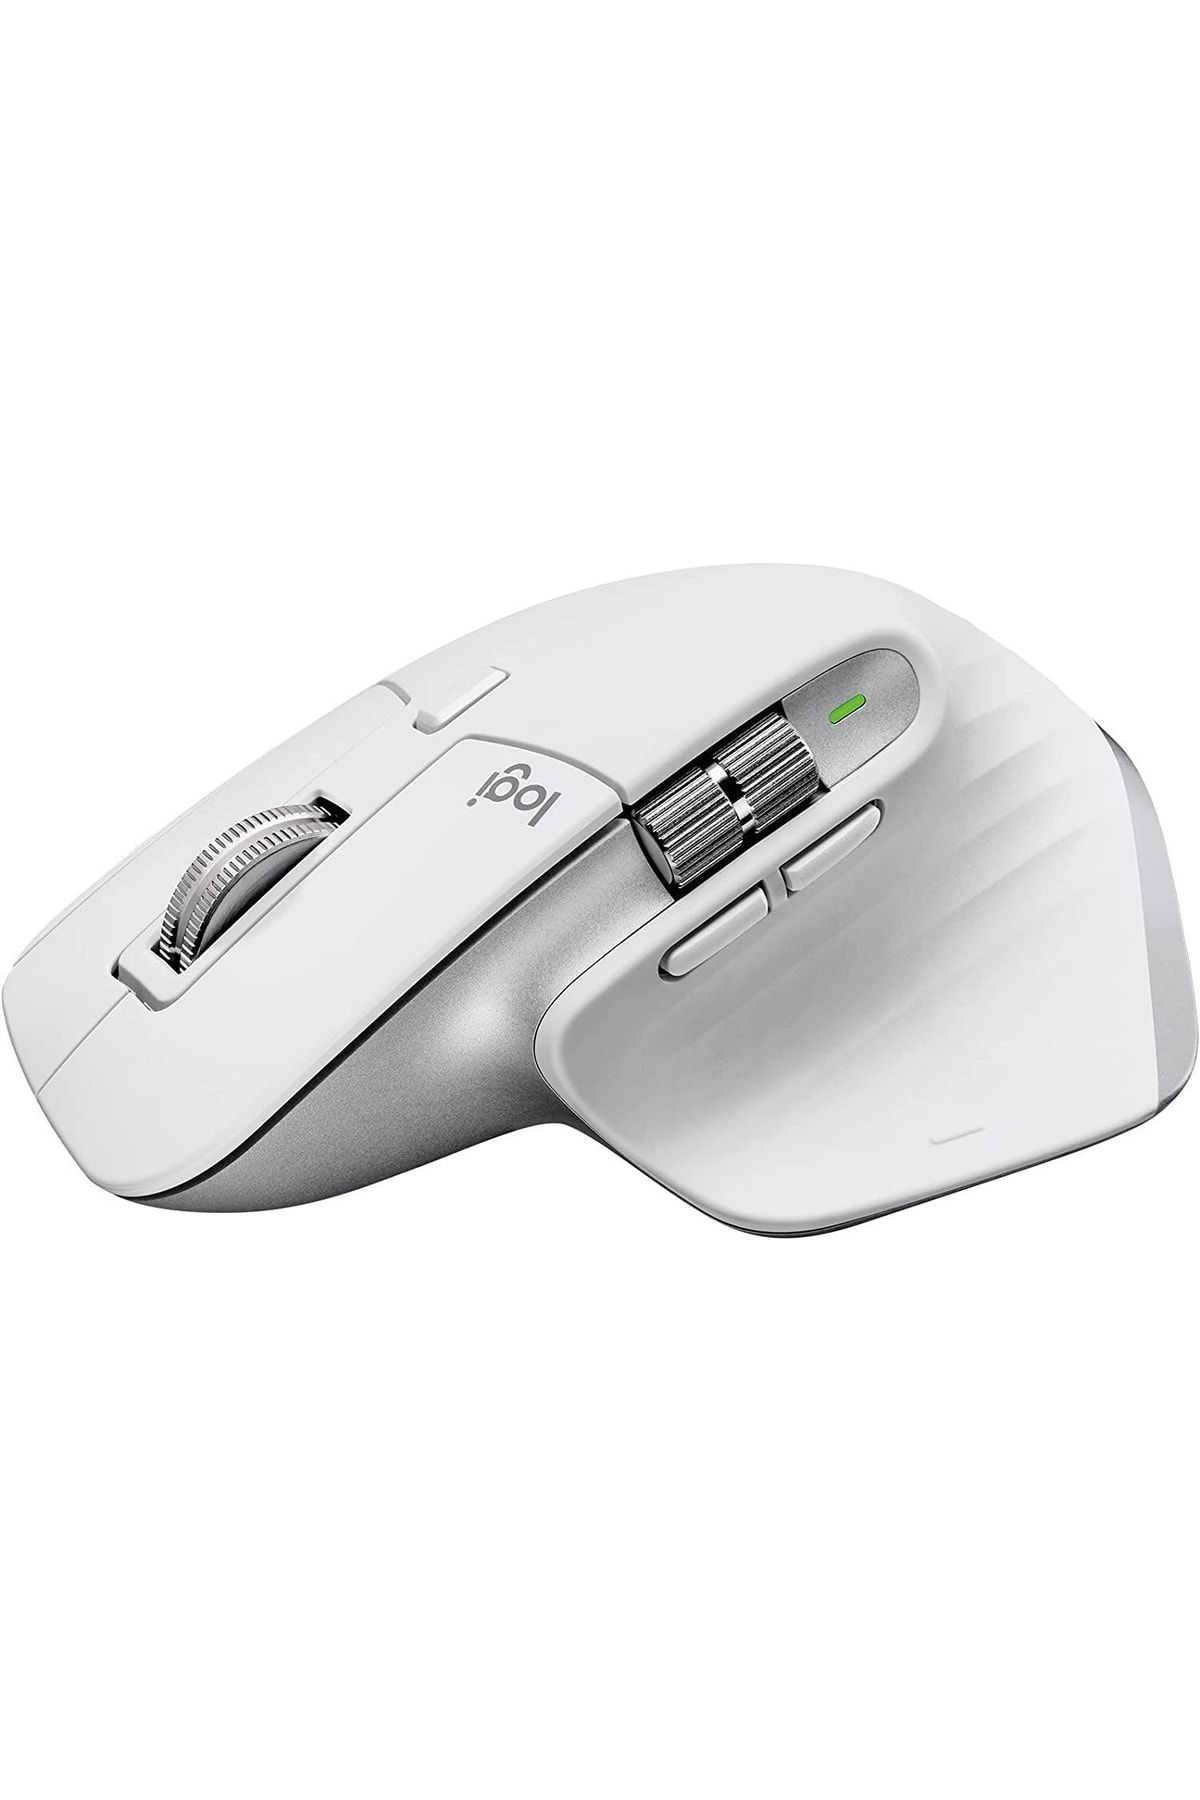 logitech Mx Master 3S Mac İçin Yüksek Performanslı 8.000 Dpi Optik Sensörlü Sessiz Kablosuz Mouse - B